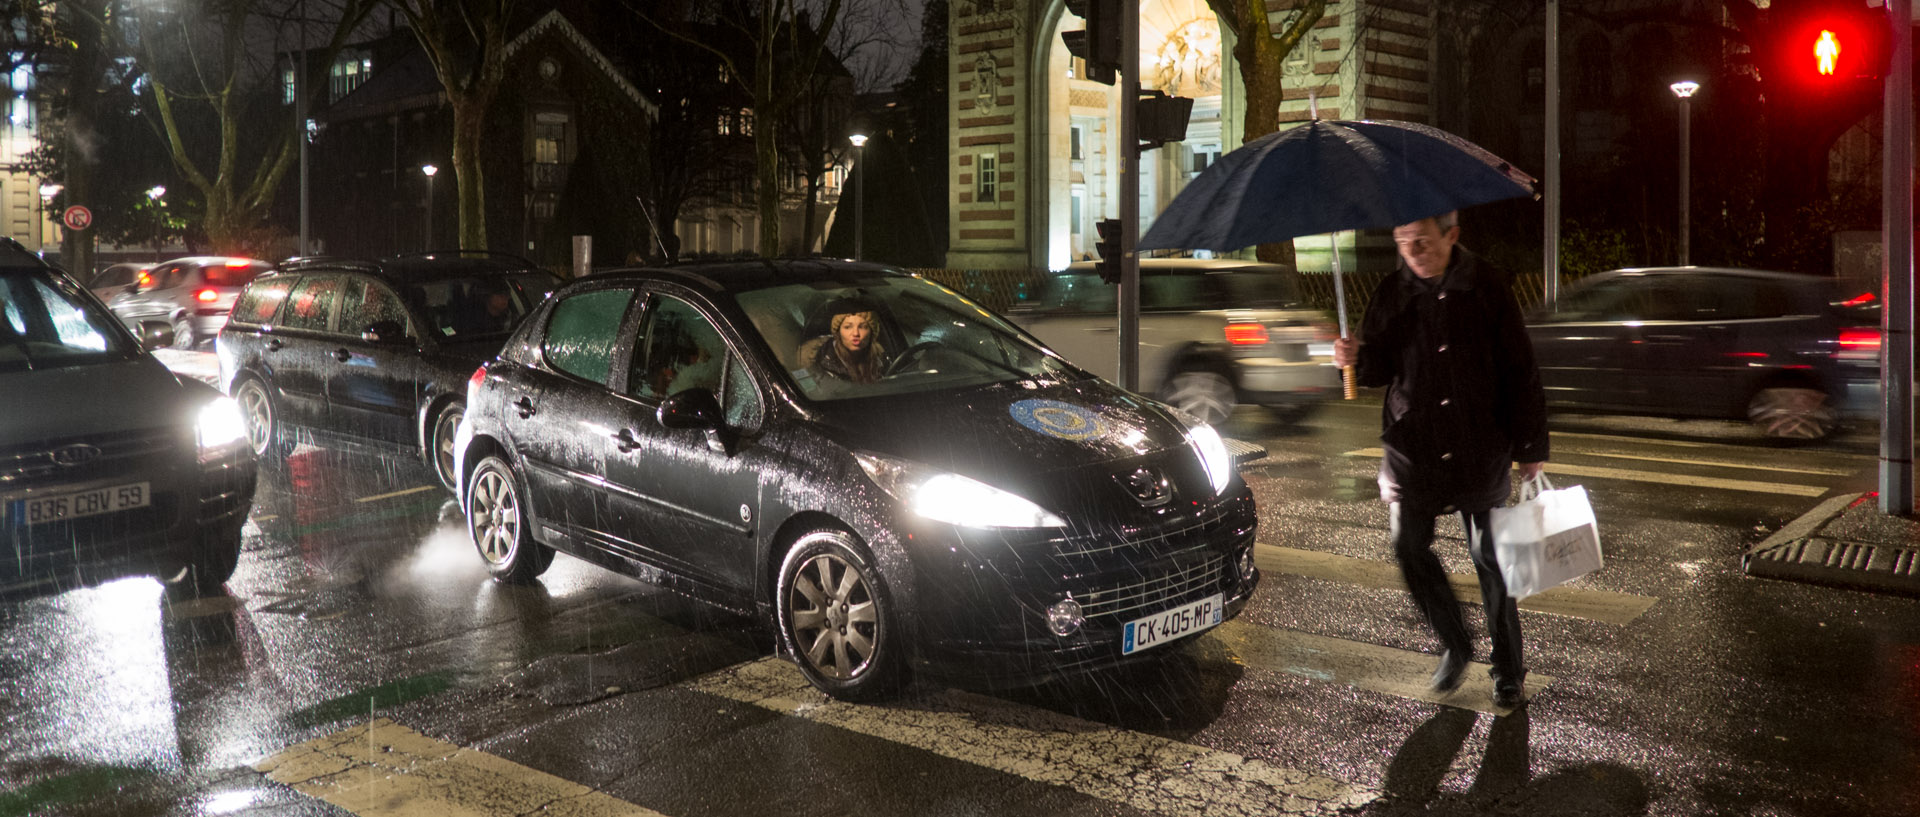 Piéton traversant devant des voitures, sous la pluie, boulevard Vauban, à Lille.